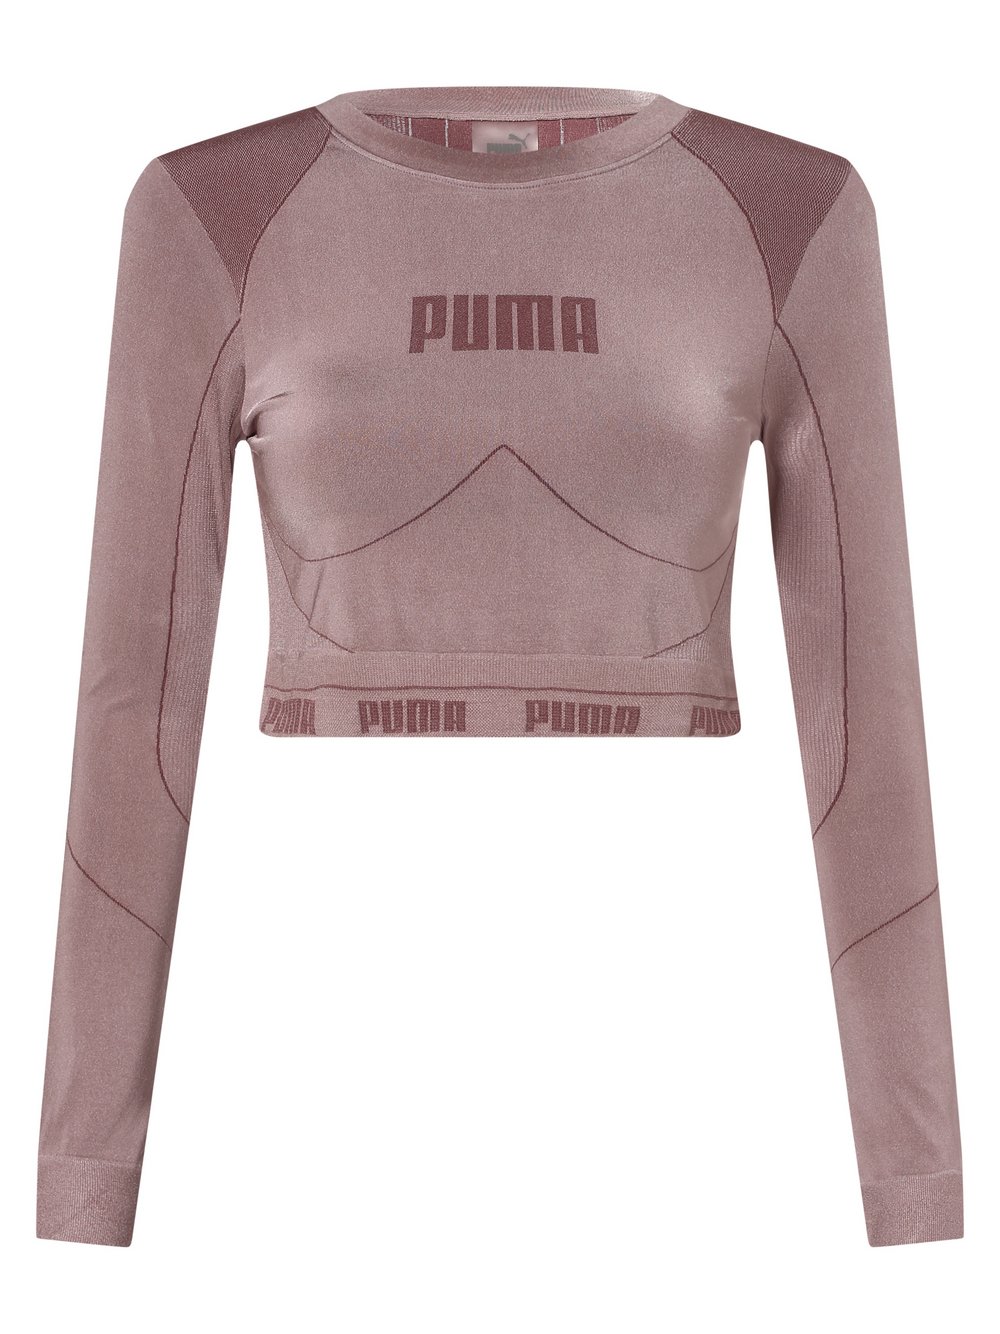 Puma - Damska koszulka z długim rękawem, różowy